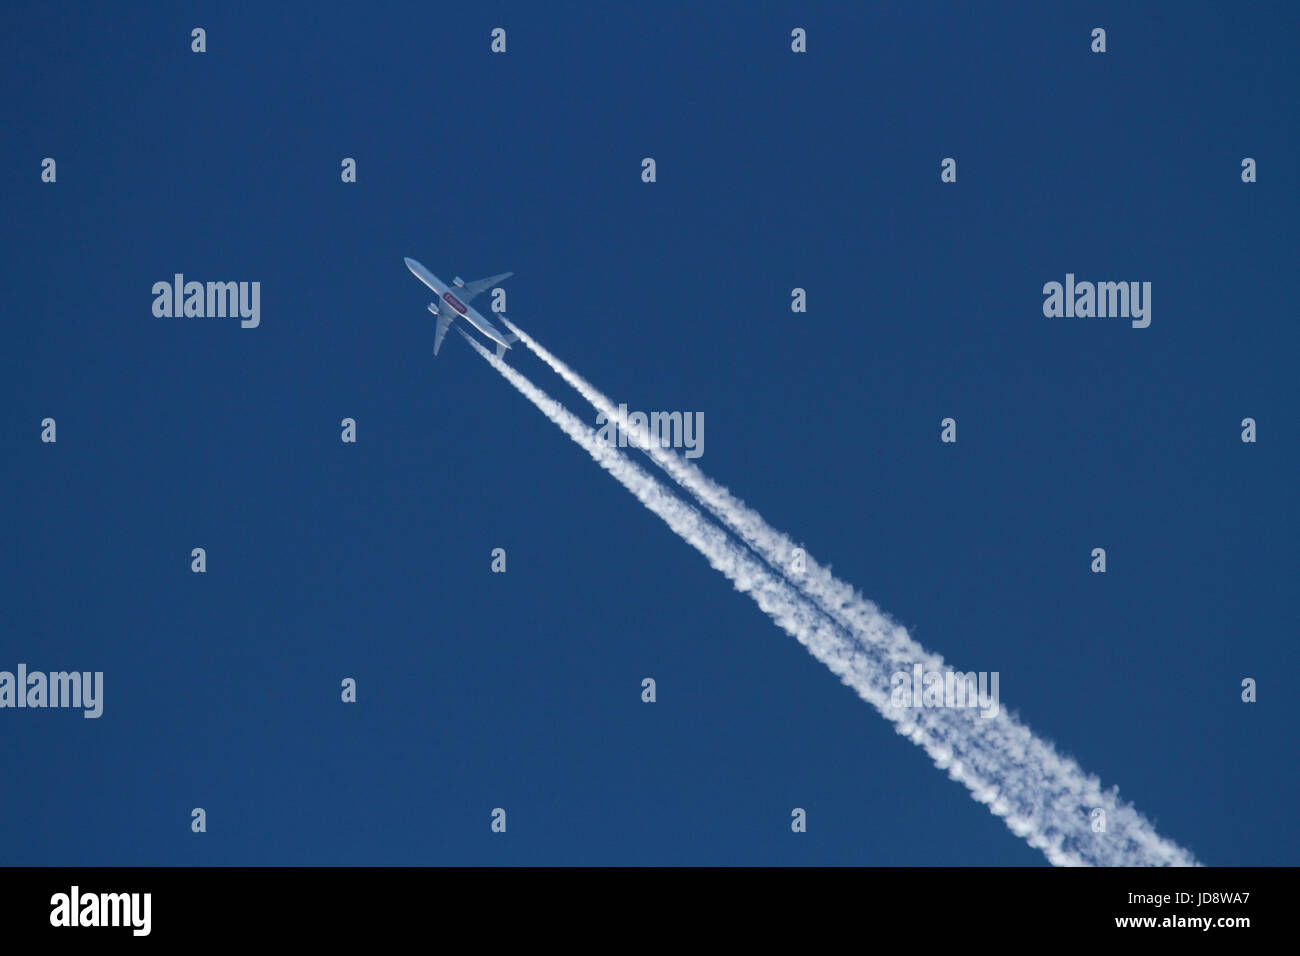 Les voyages aériens et l'environnement. Unis Boeing 777 avion à réaction volant haut dans le ciel et la génération d'une traînée de condensation dans l'air Banque D'Images